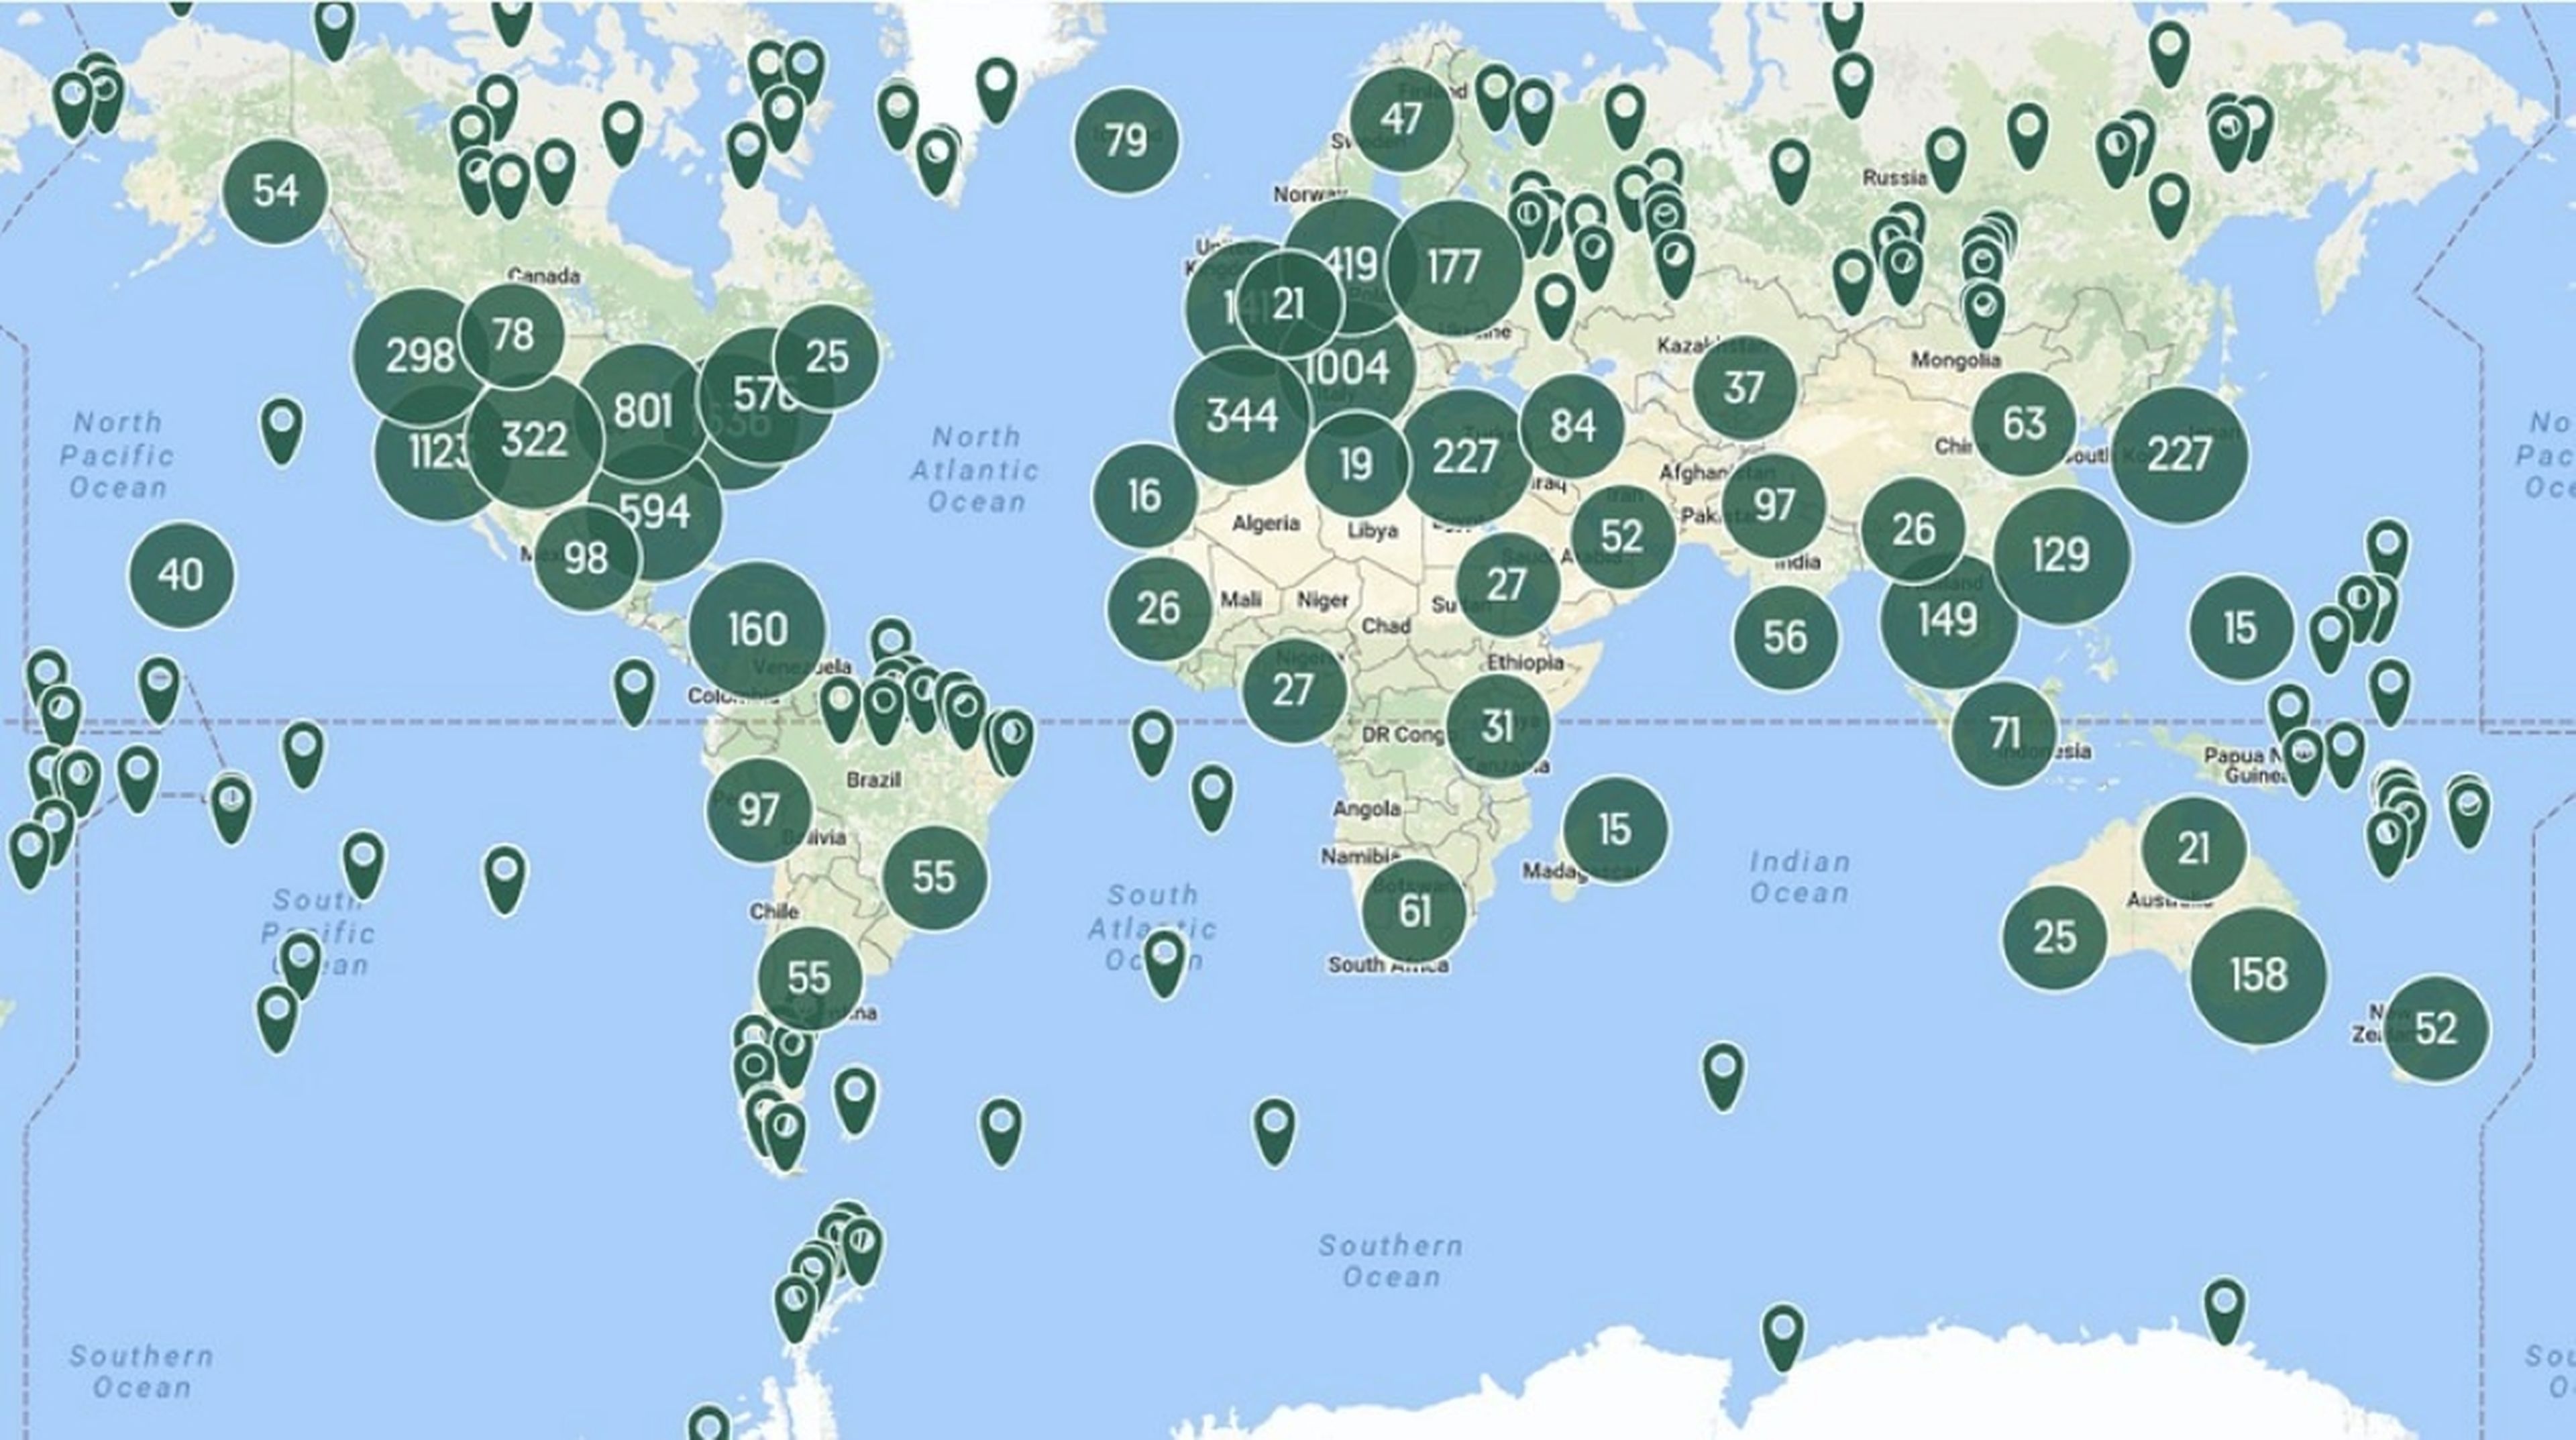 Mapa interactivo con los lugares más extraños del mundo